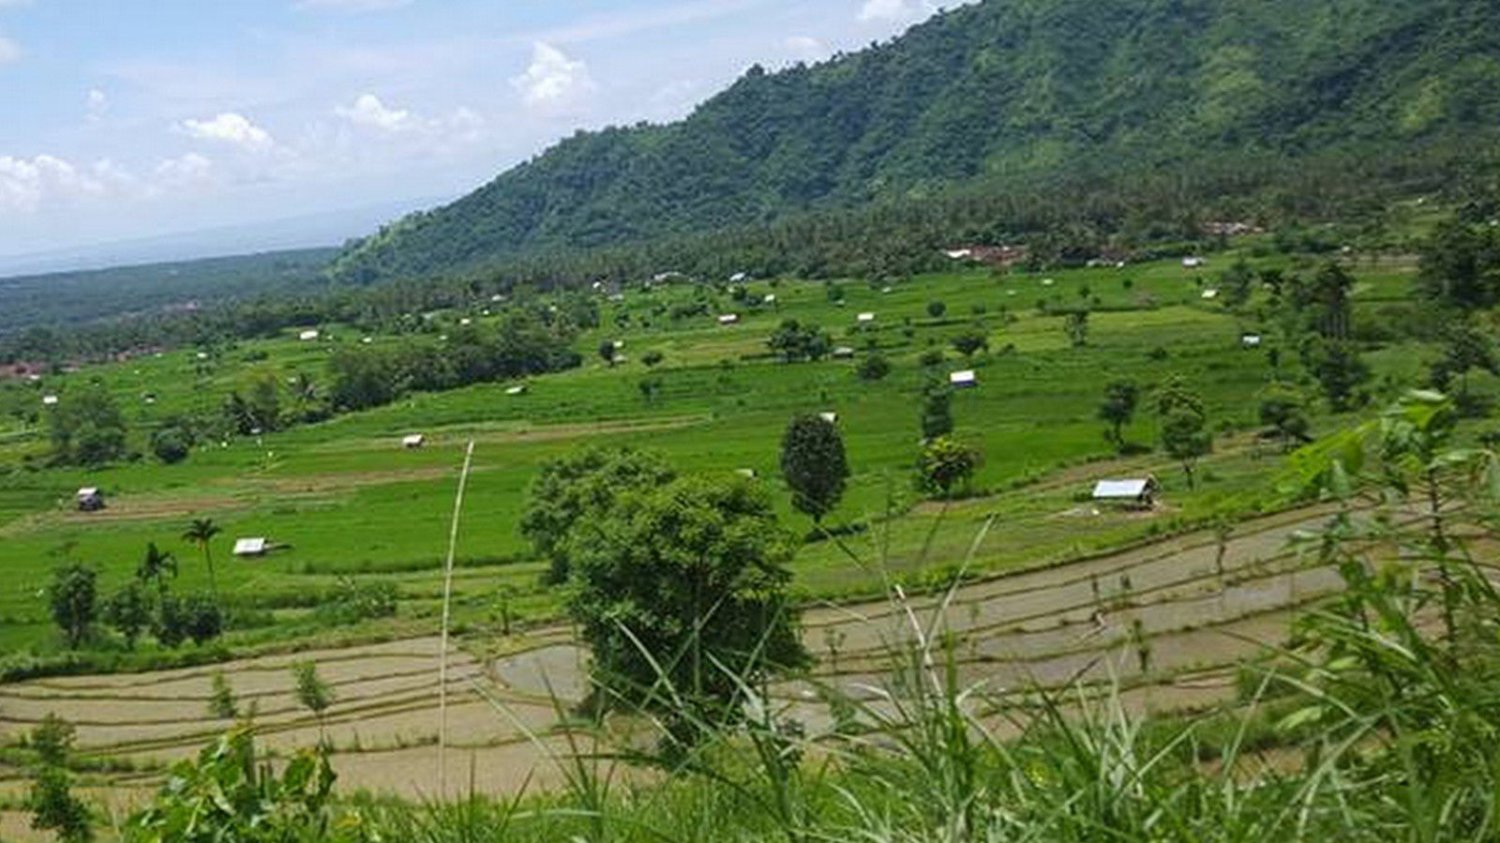 balade au village de sidemen avec de belles collines et rizières